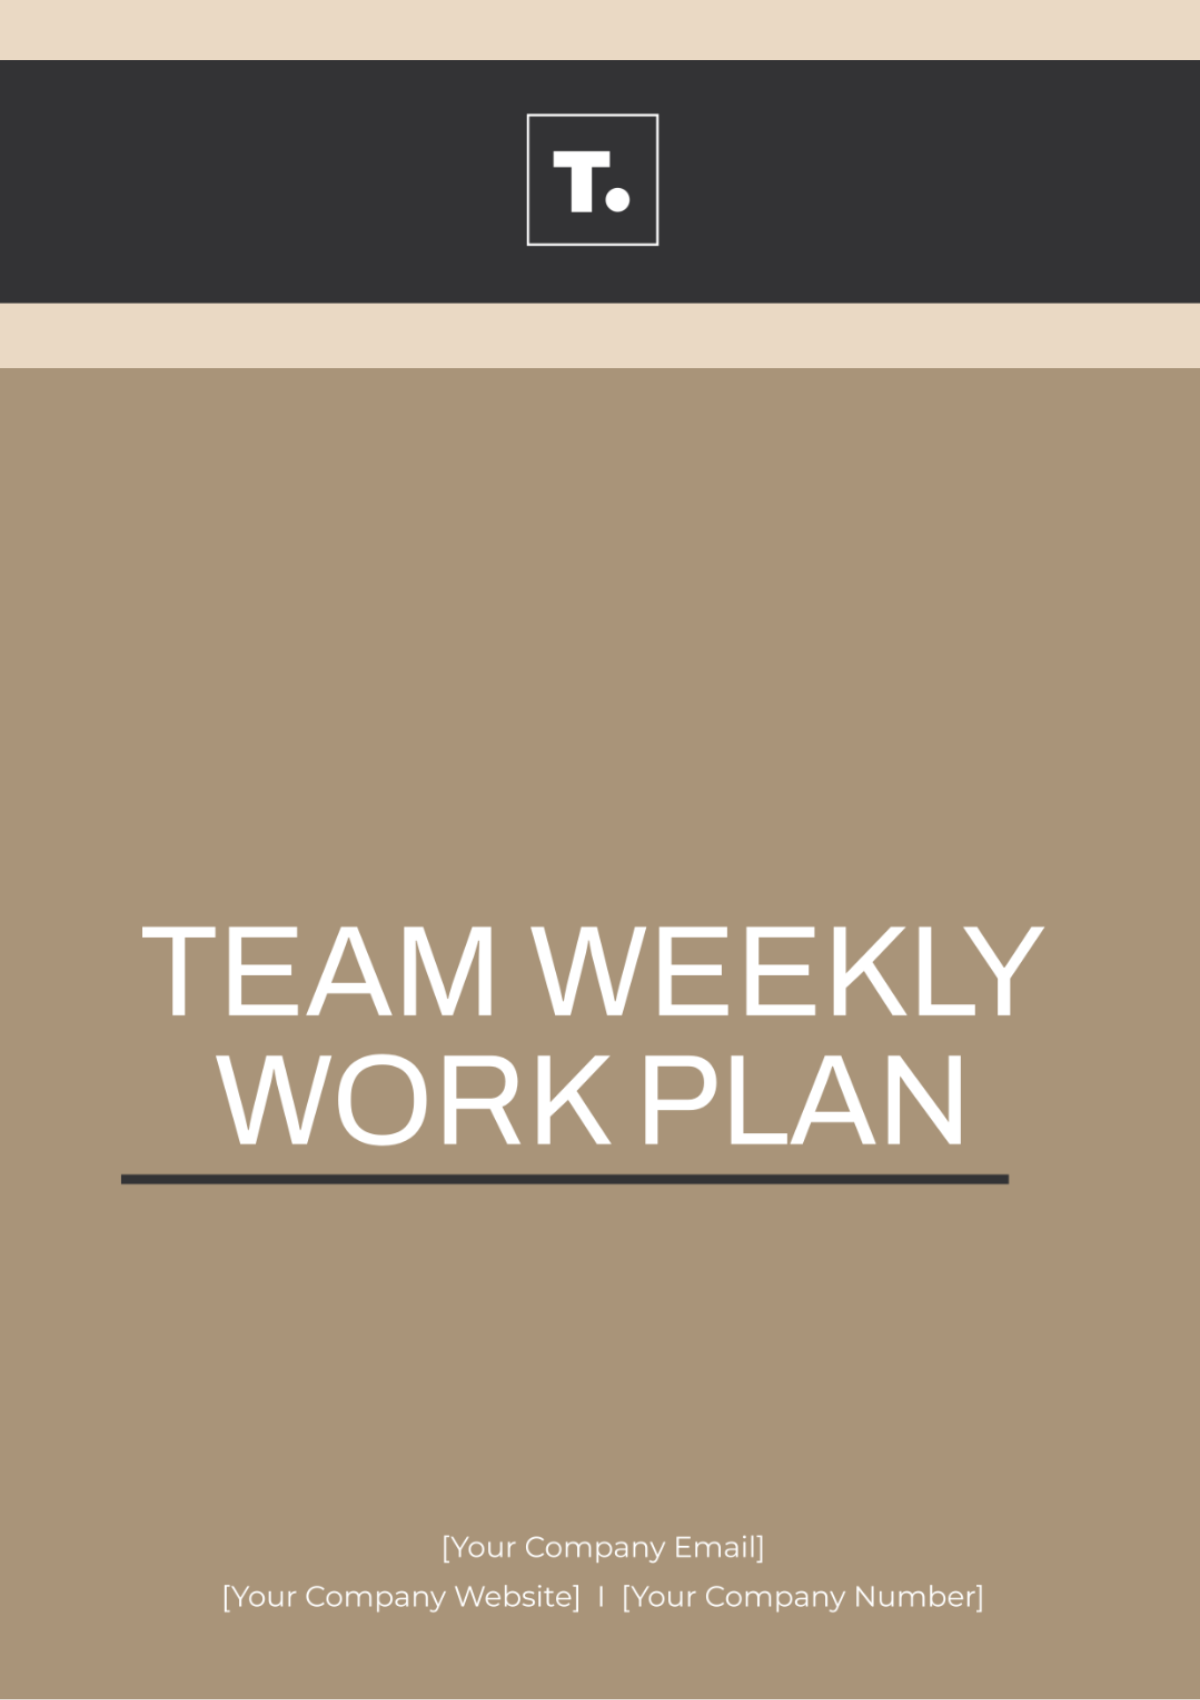 Free Team Weekly Work Plan Template